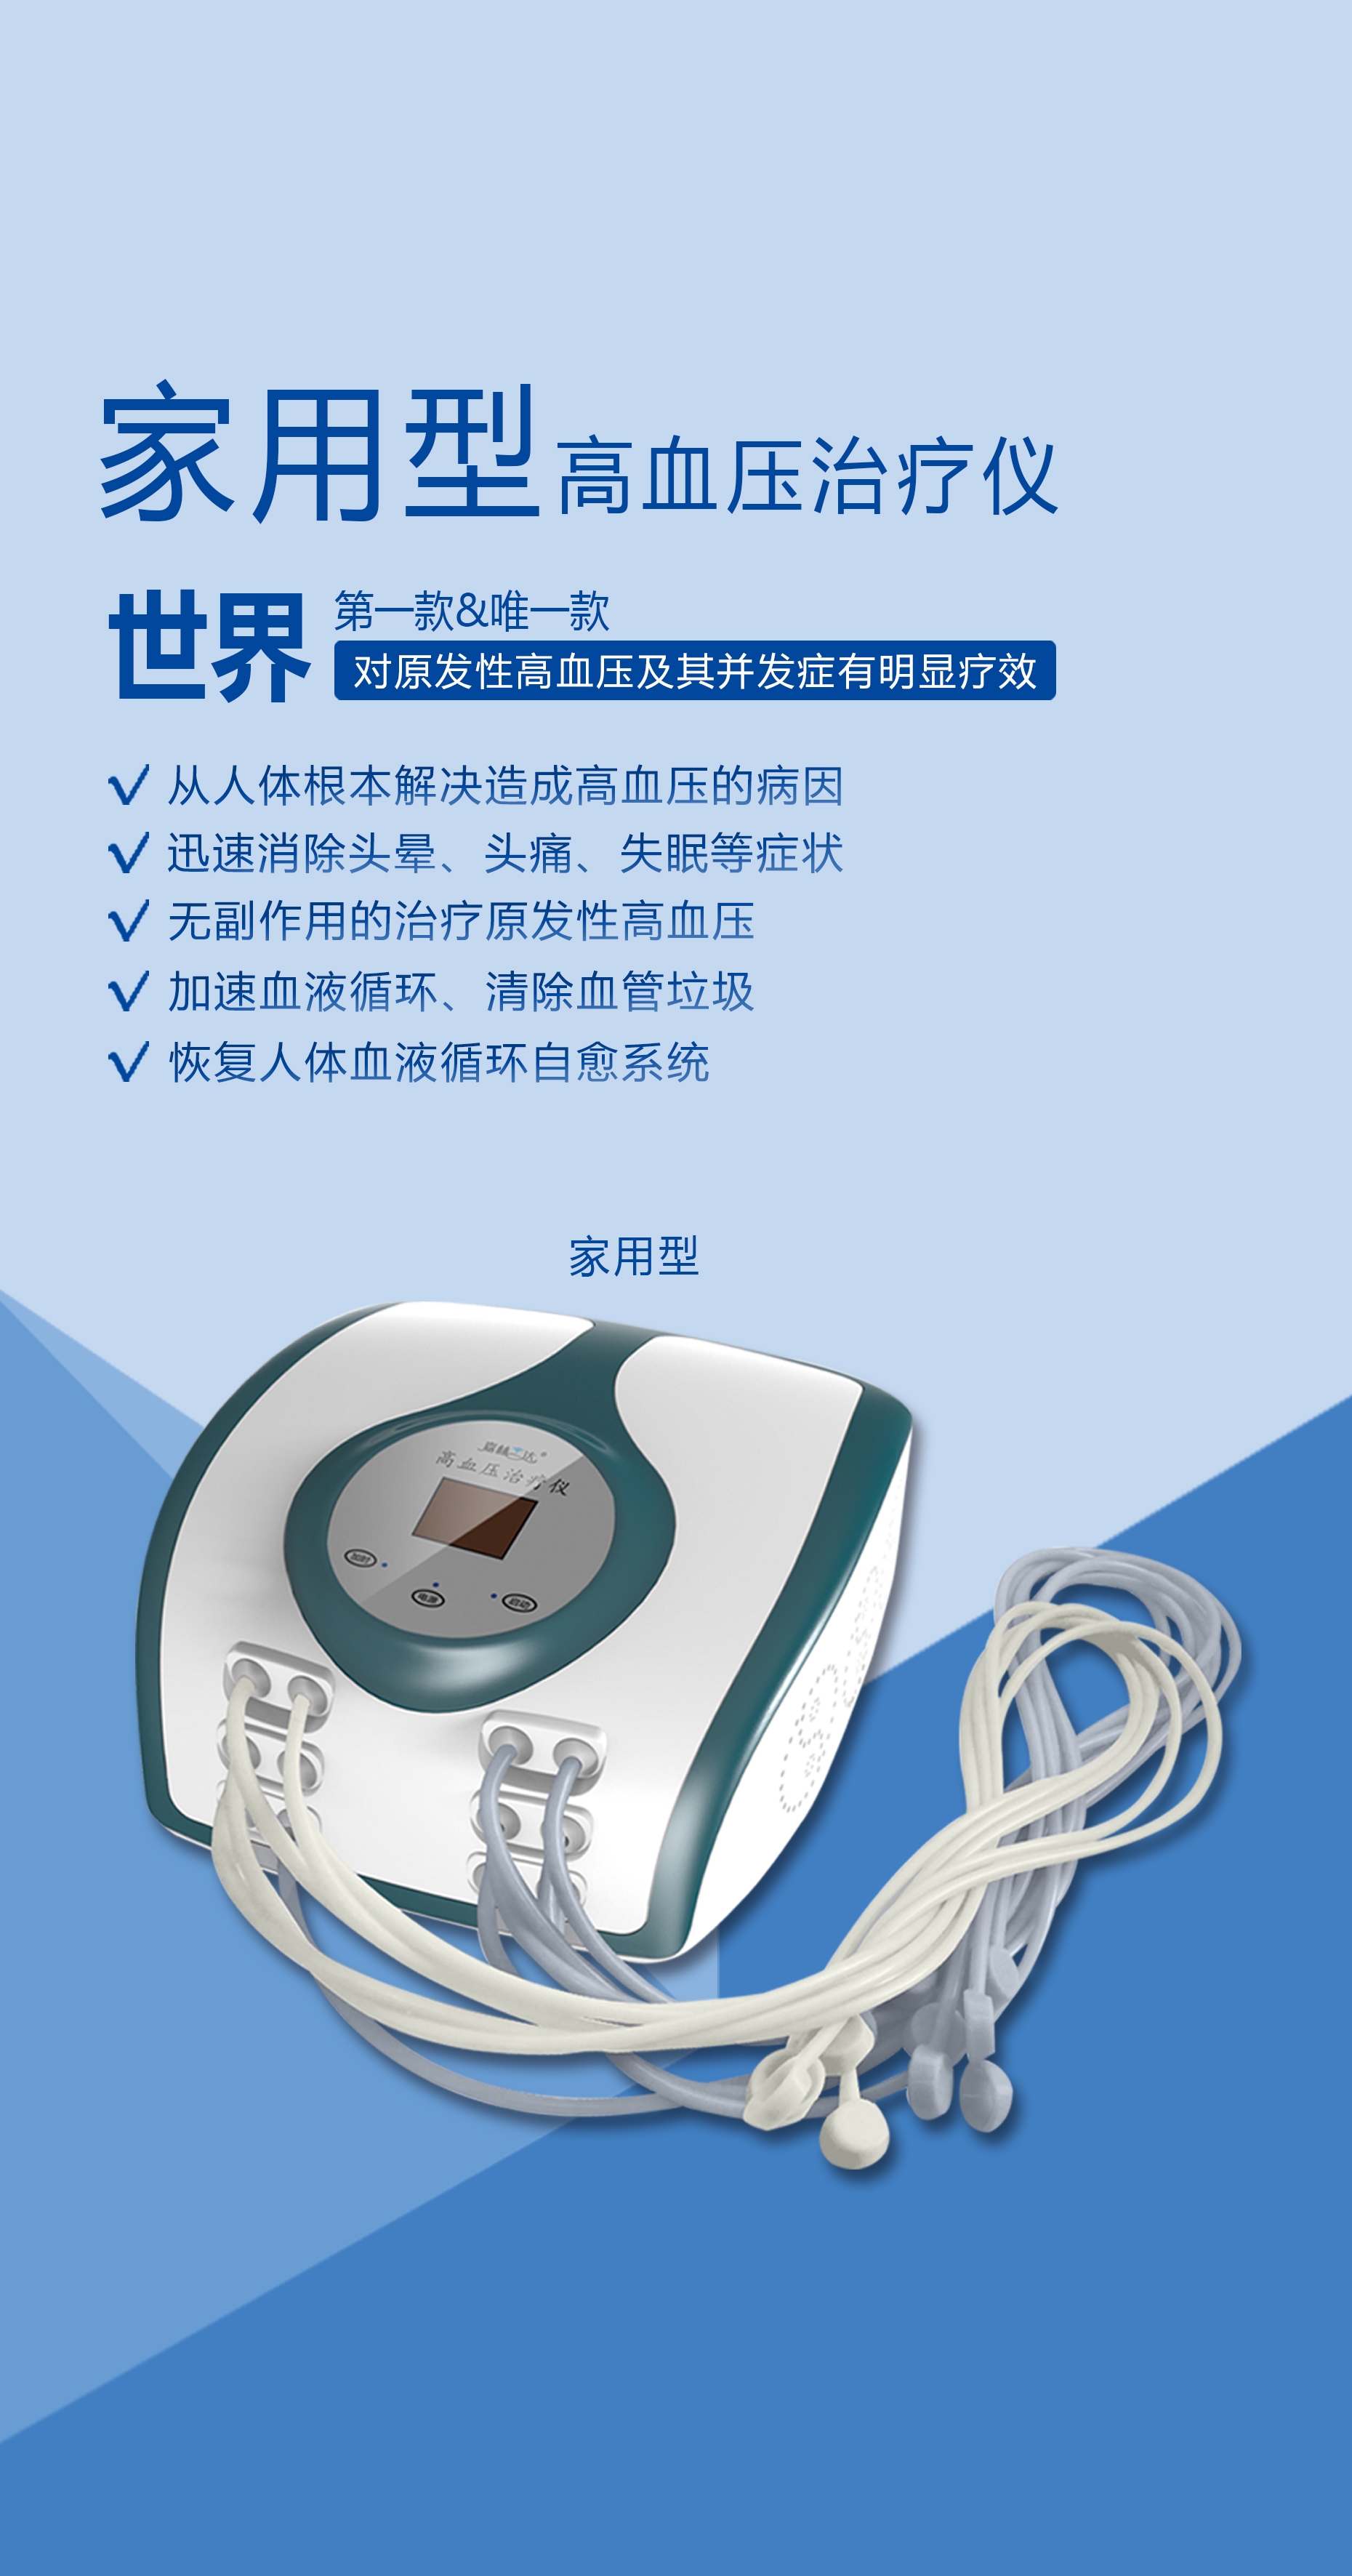 家用型高血压治疗仪